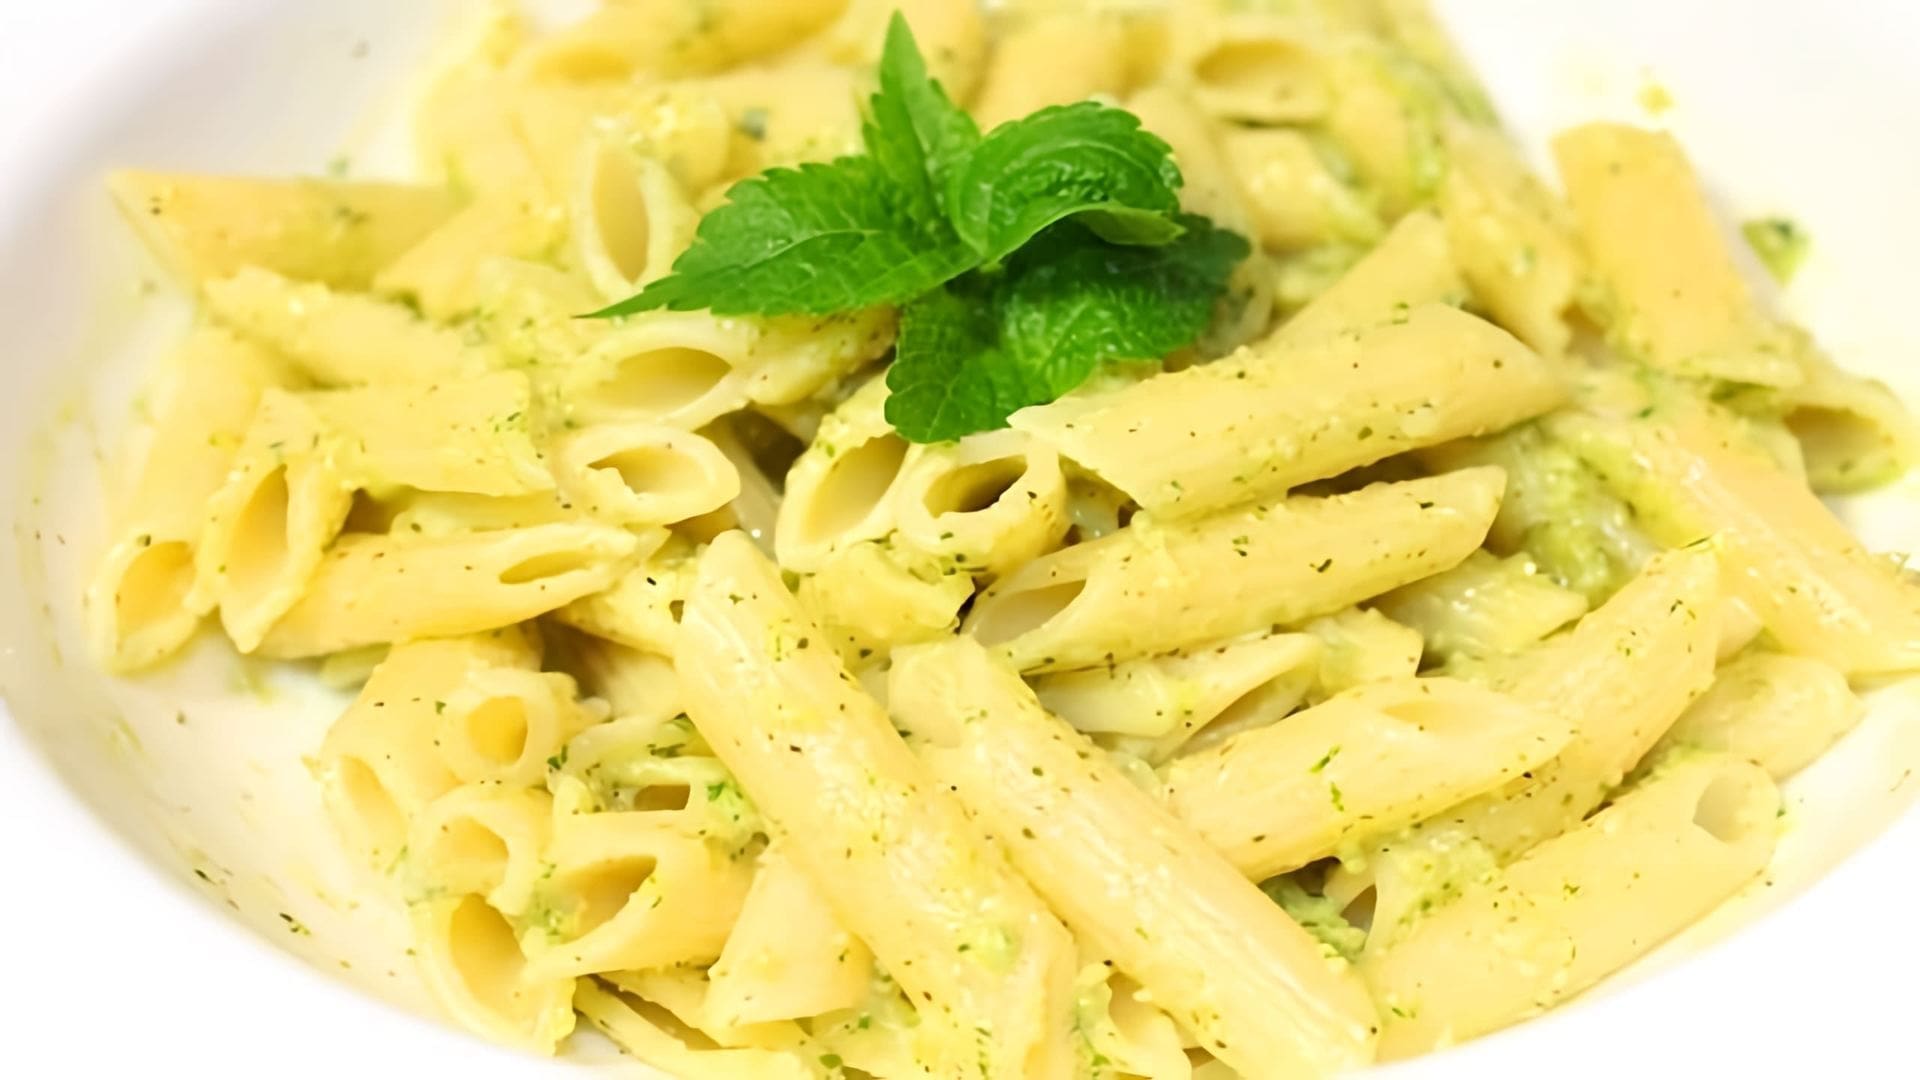 В данном видео демонстрируется рецепт итальянского соуса для макарон